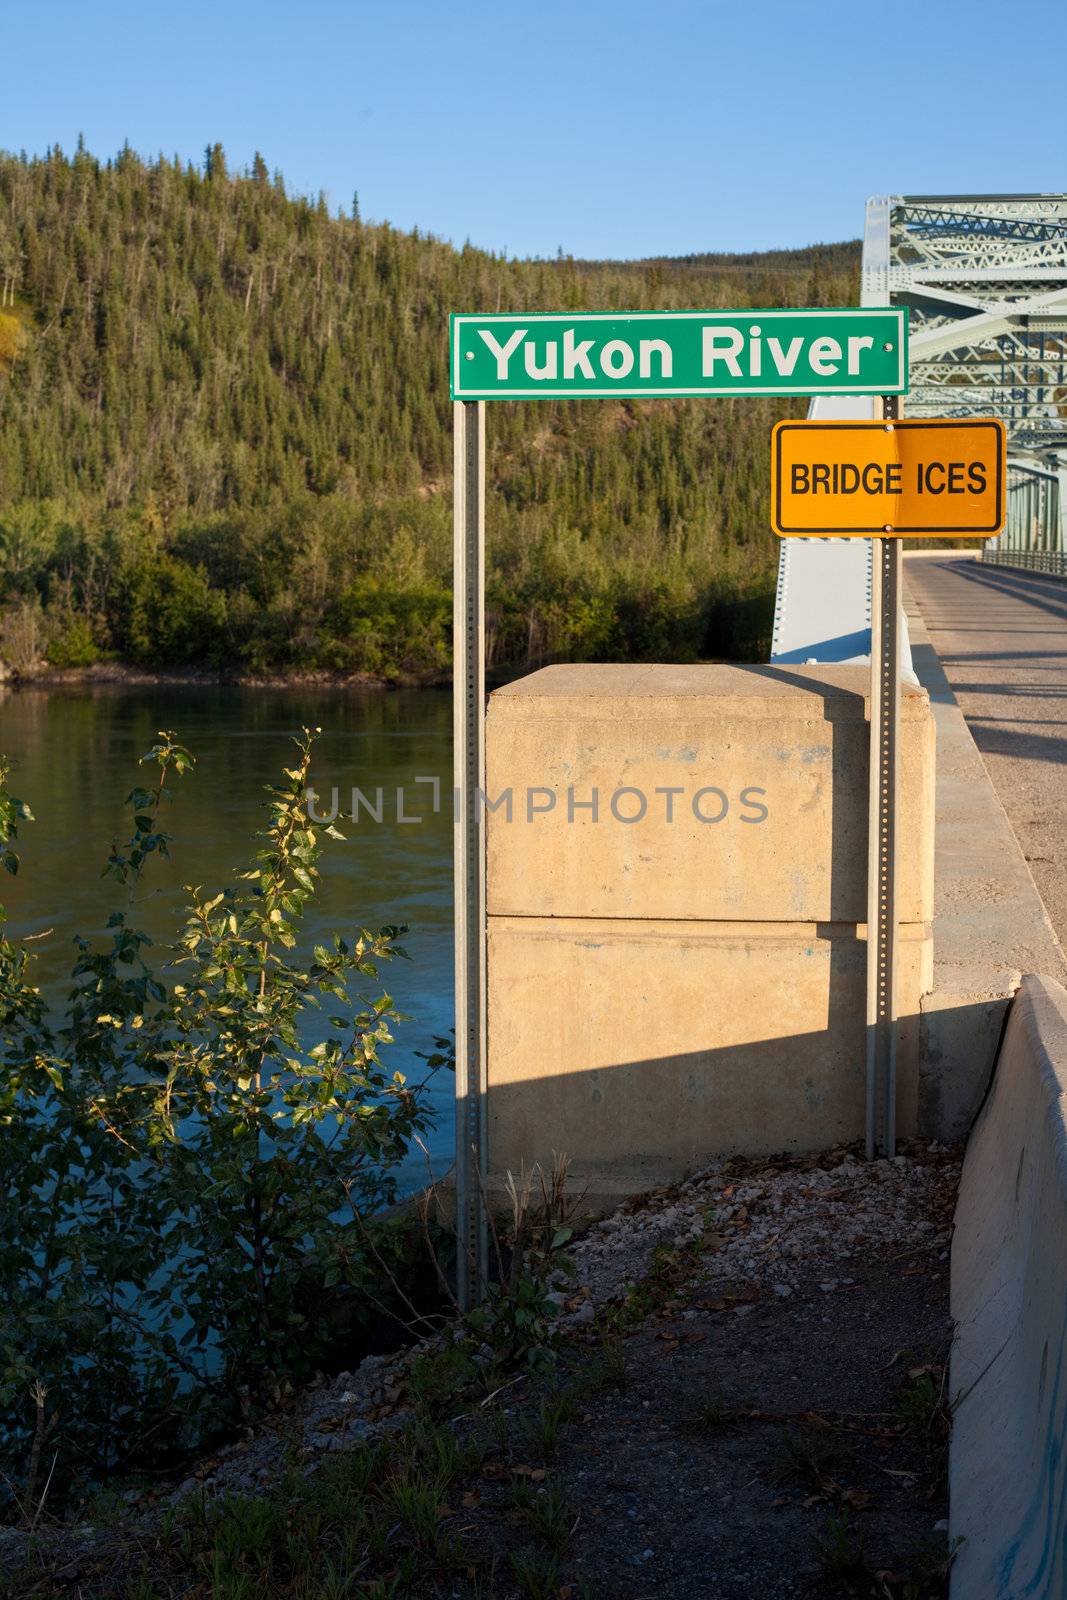 Yukon river bridge by PiLens